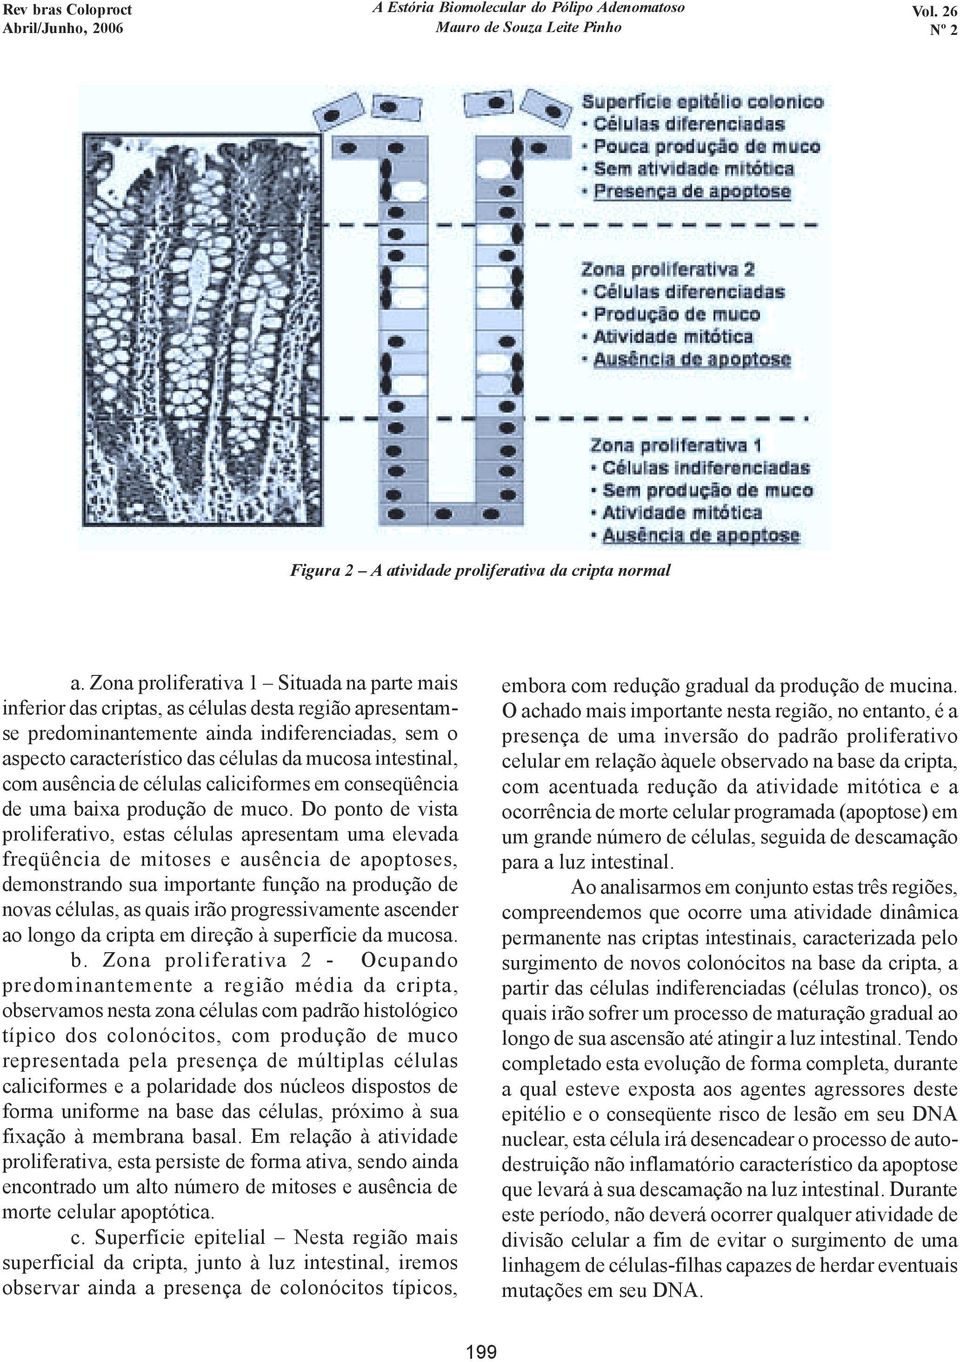 intestinal, com ausência de células caliciformes em conseqüência de uma baixa produção de muco.